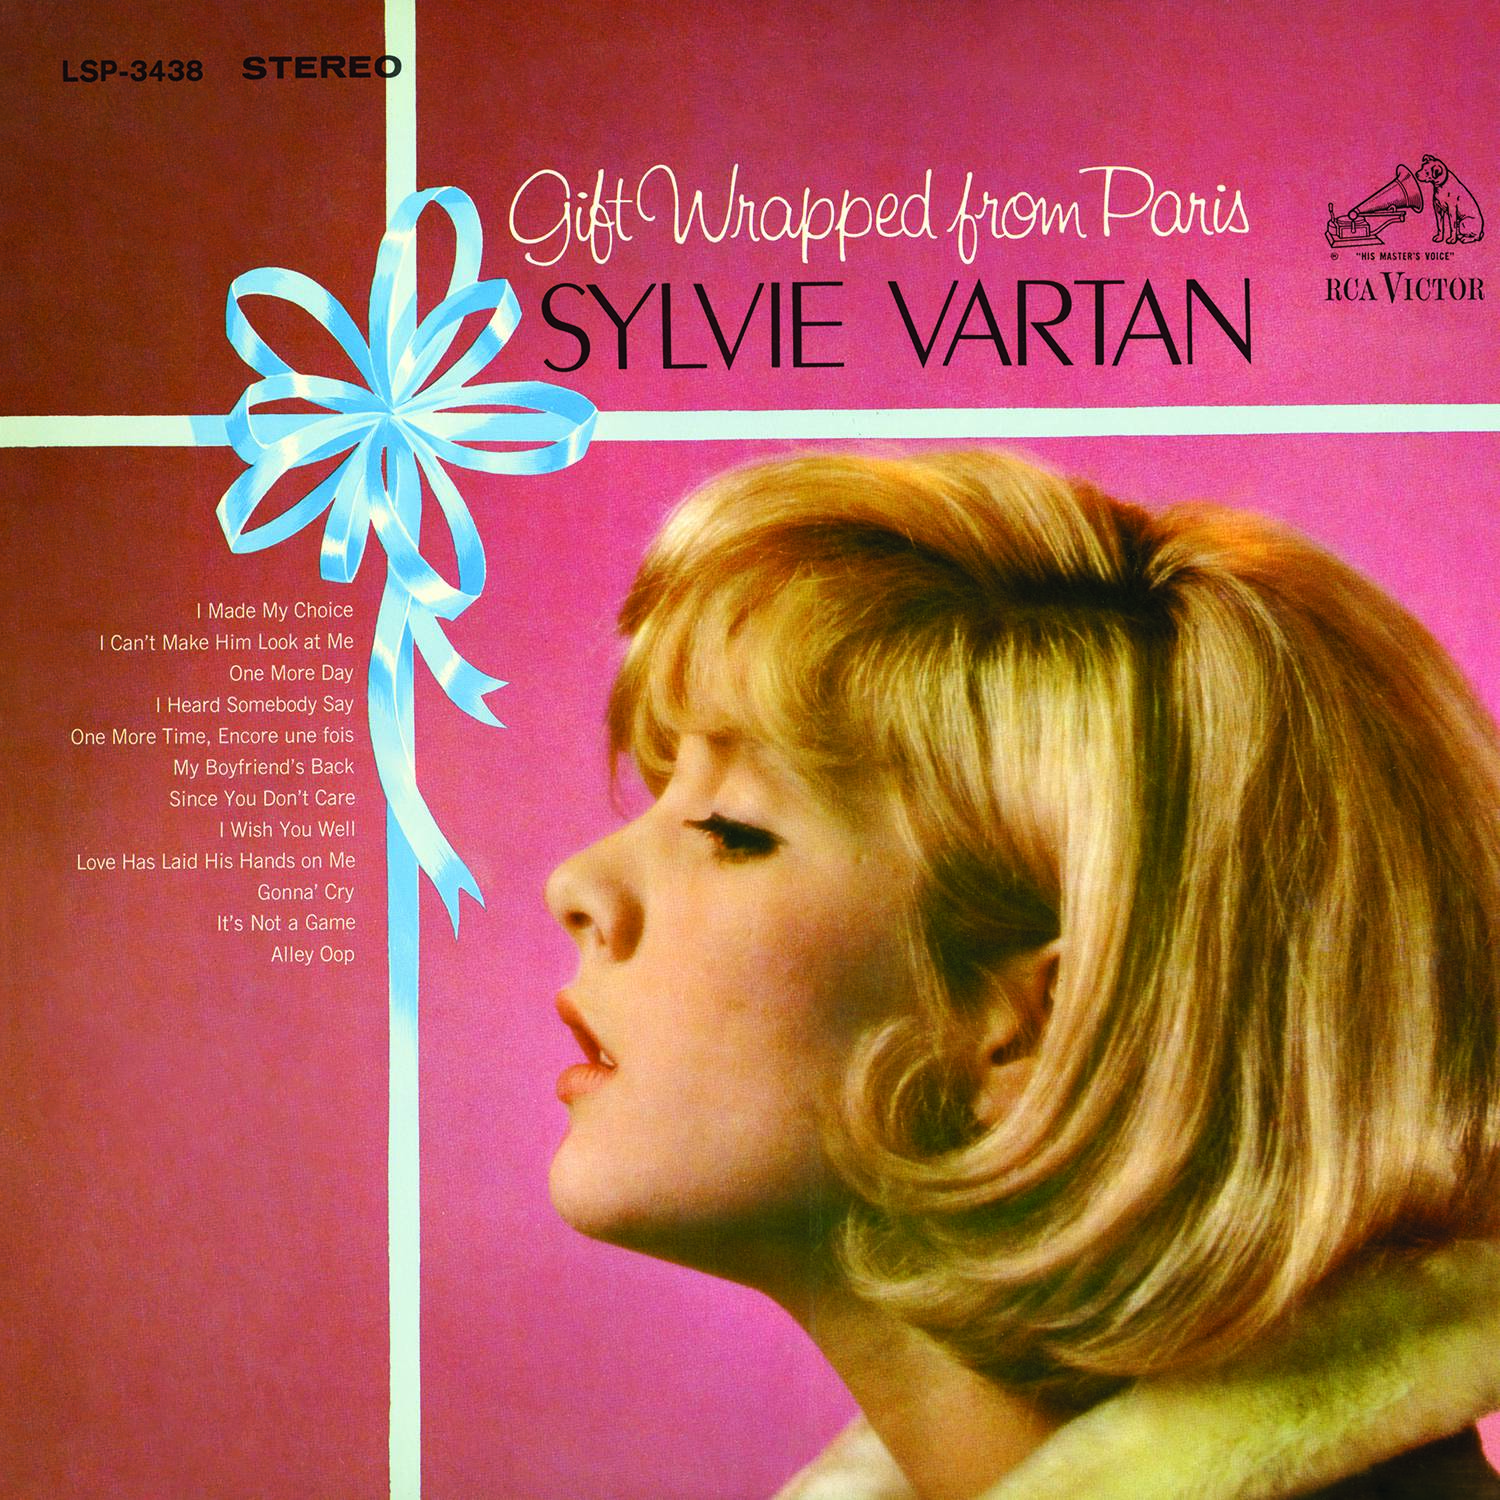 Sylvie Vartan – Gift Wrapped From Paris (1965/2015) [AcousticSounds FLAC 24bit/96kHz]